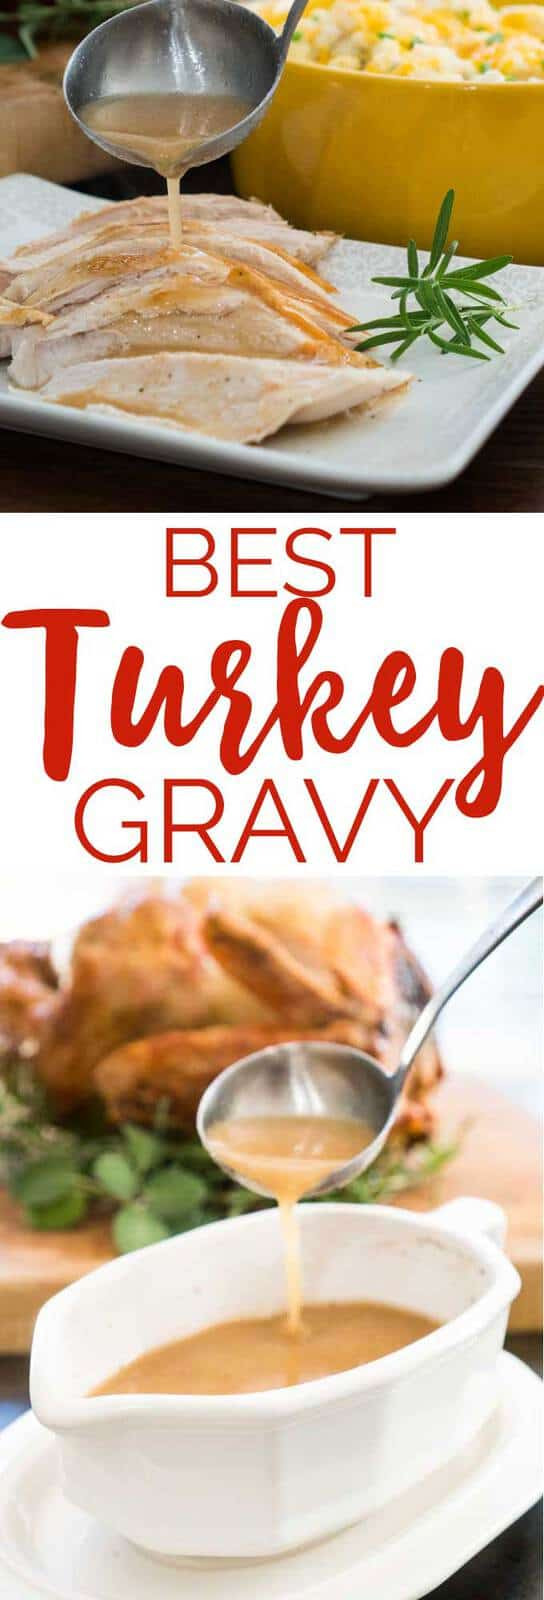 Best Thanksgiving Gravy Recipe
 Best Turkey Gravy Recipe For Thanksgiving or Year Round